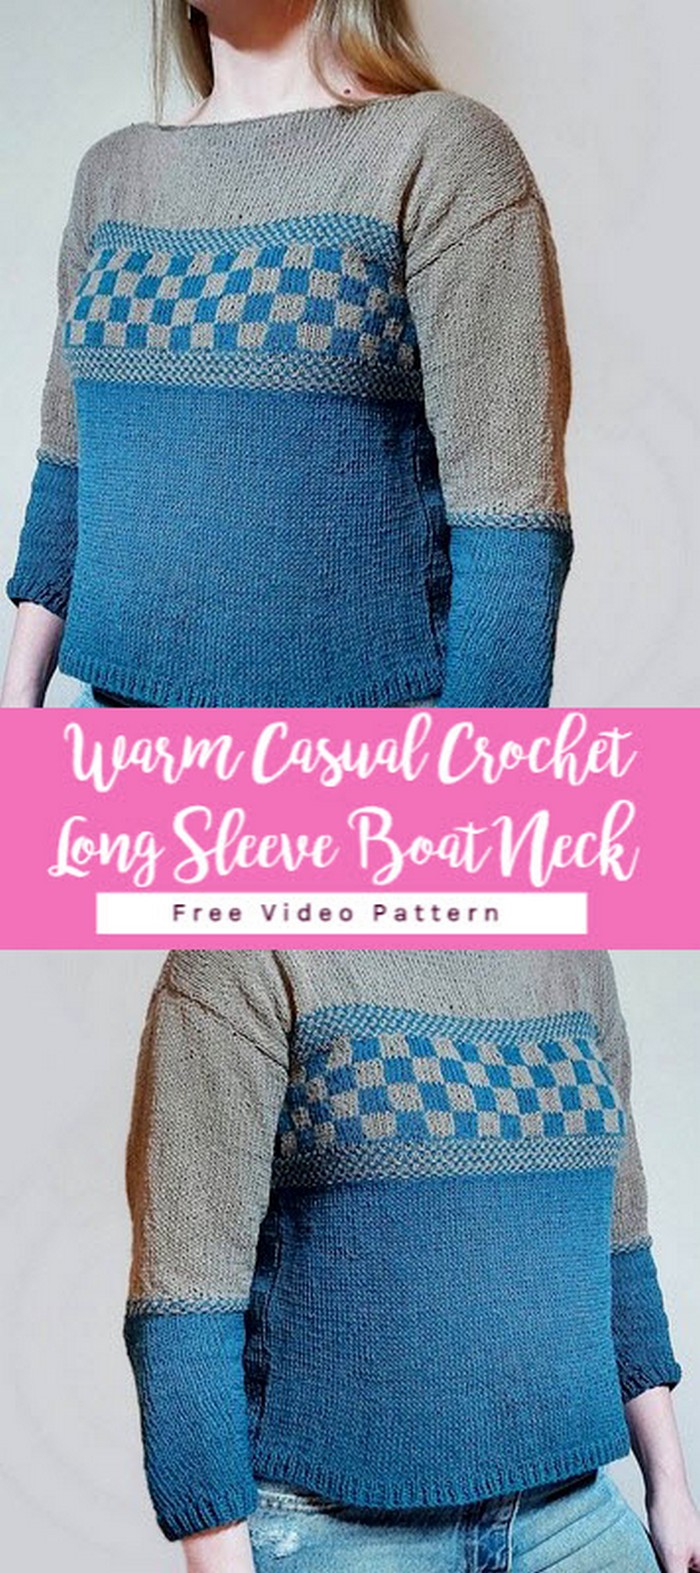 Warm Casual Crochet Long Sleeve Boat Neck